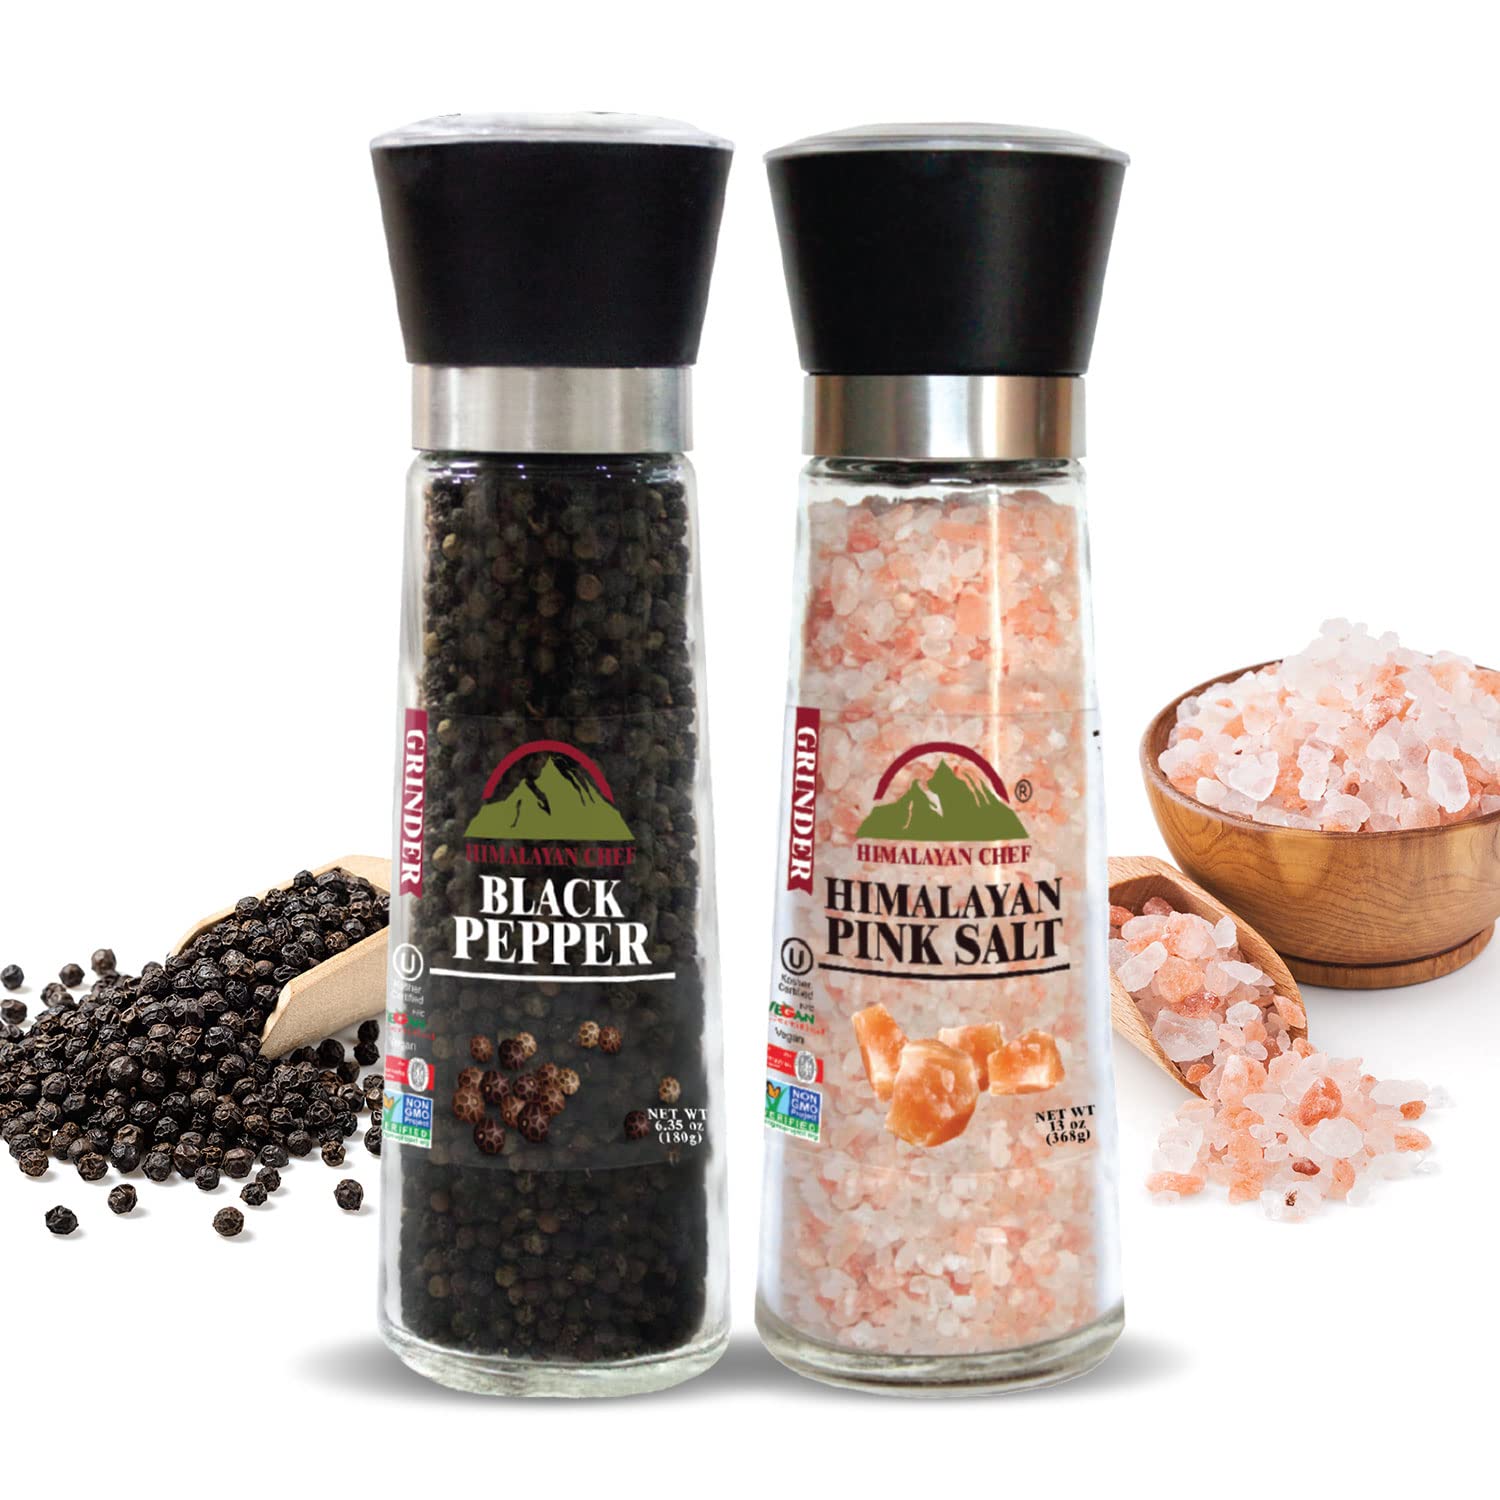 Himalayan Chef Himalayan Pink Salt & Black Pepper Grinder-Set of 2